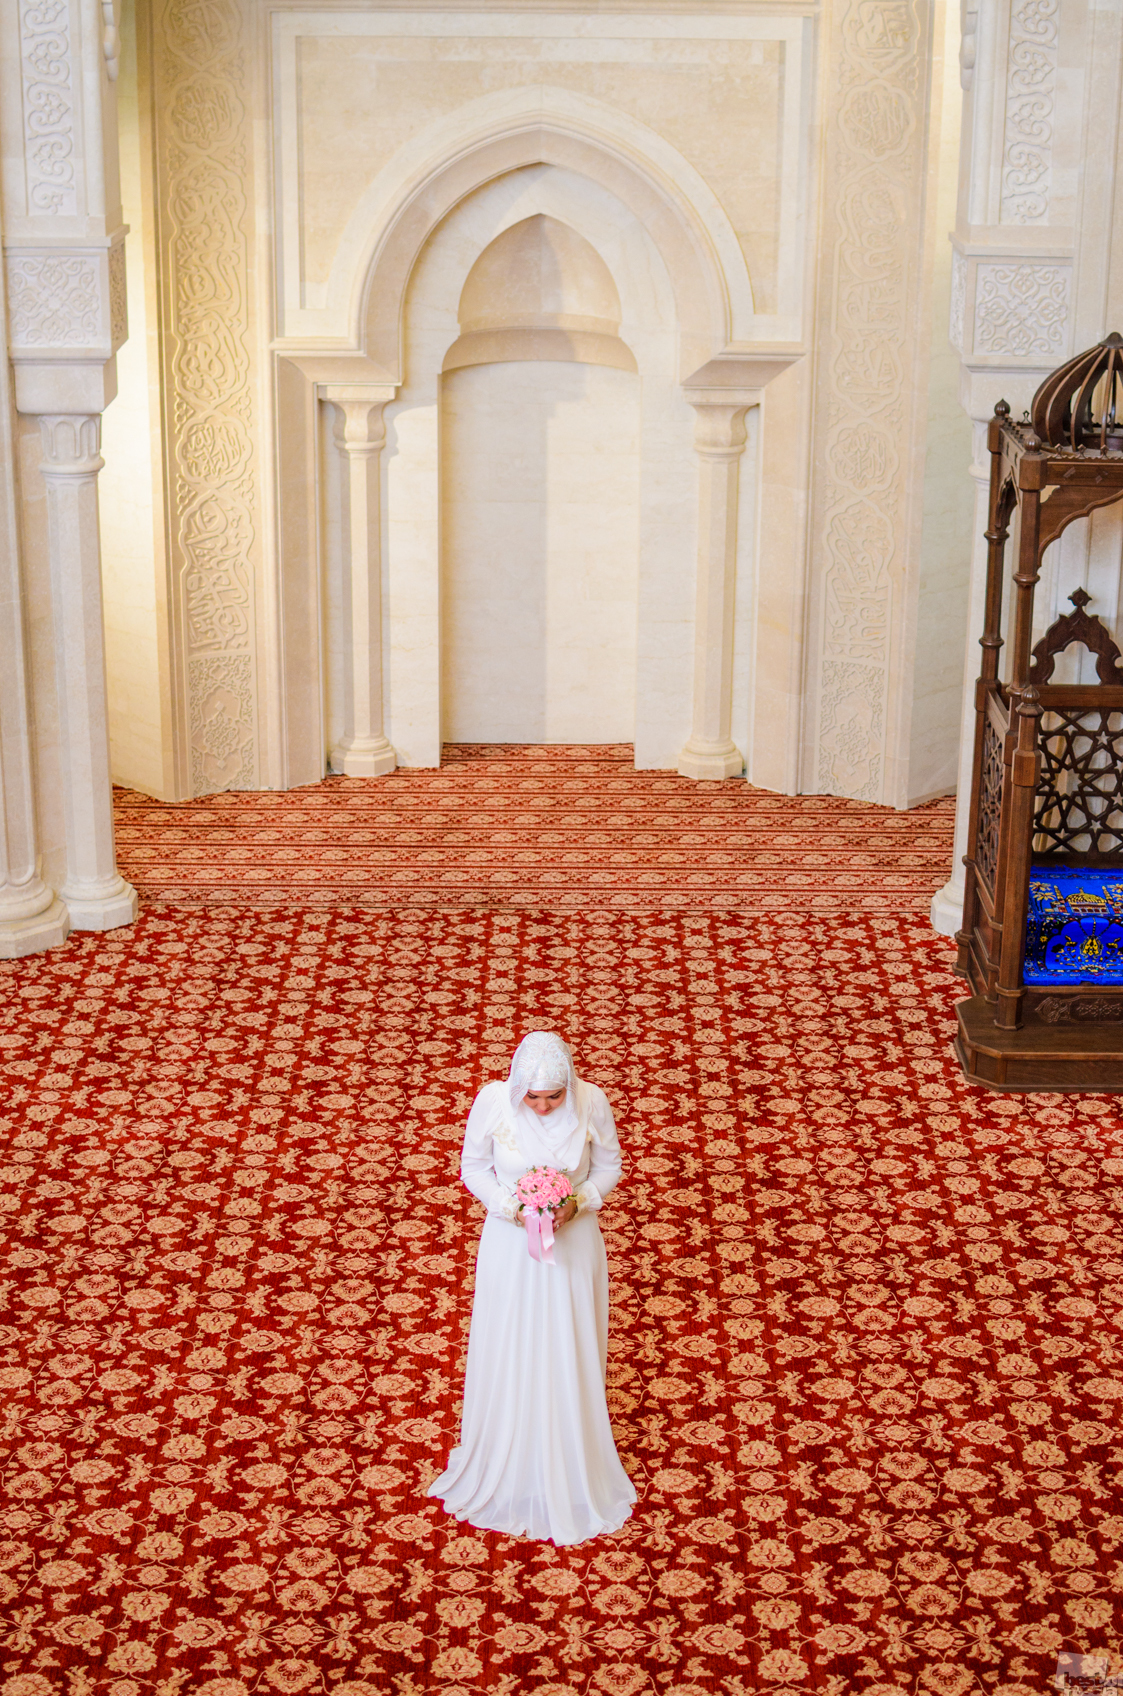 「冠婚葬祭」部門では、全国各地で撮影されたさまざまな写真のコレクションを展示されている。// ボルガリの白のモスクで佇む花嫁、ウリヤノフスク